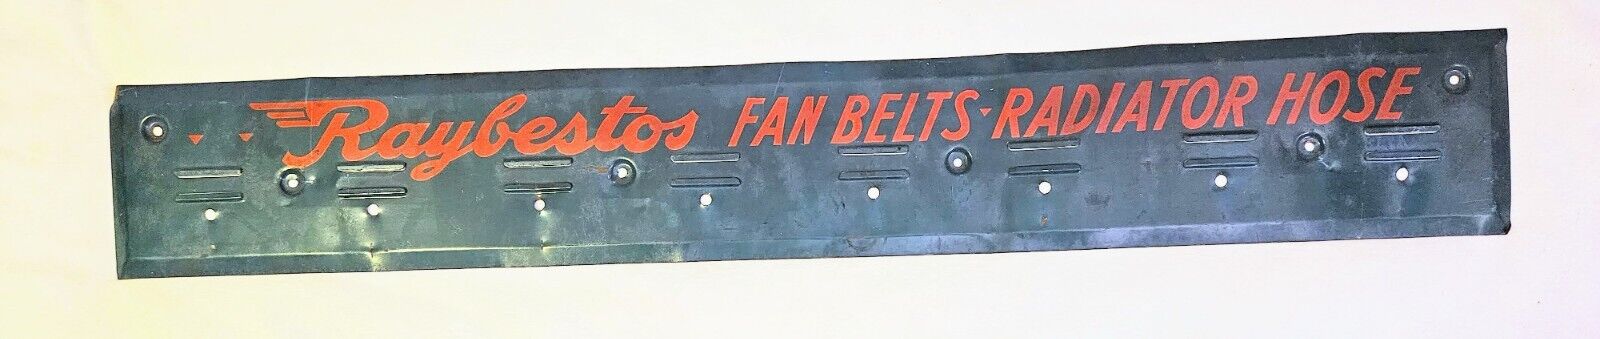 Vintage Raybestos Metal Advertising Sign Fan Belt Radiator Hose Car Repair Shop